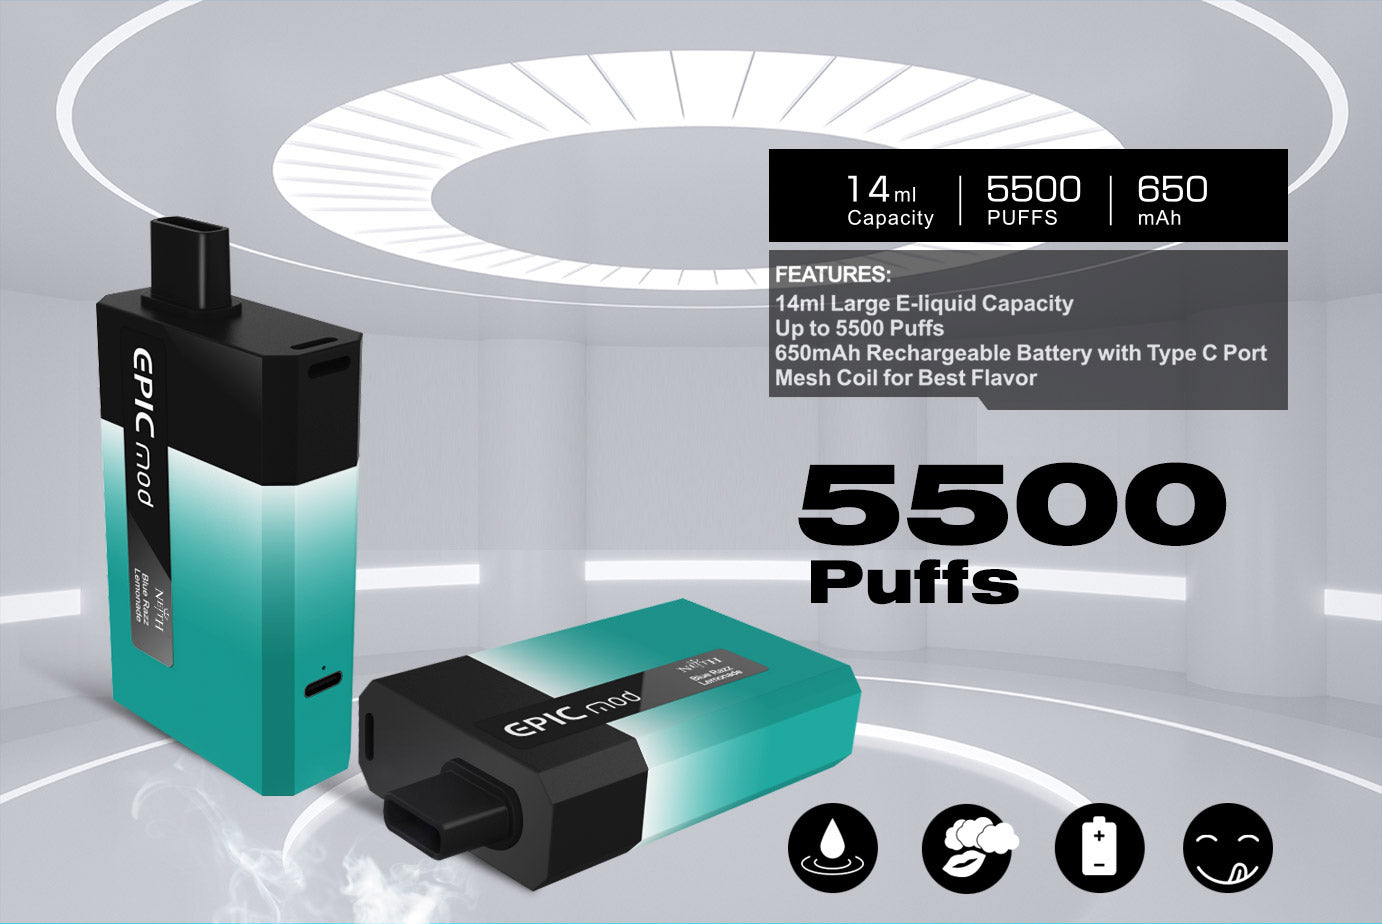 NEITH EPICMOD 5500 Wiederaufladbares Einweg E-Zigarette Kit 650mAh (0mg)